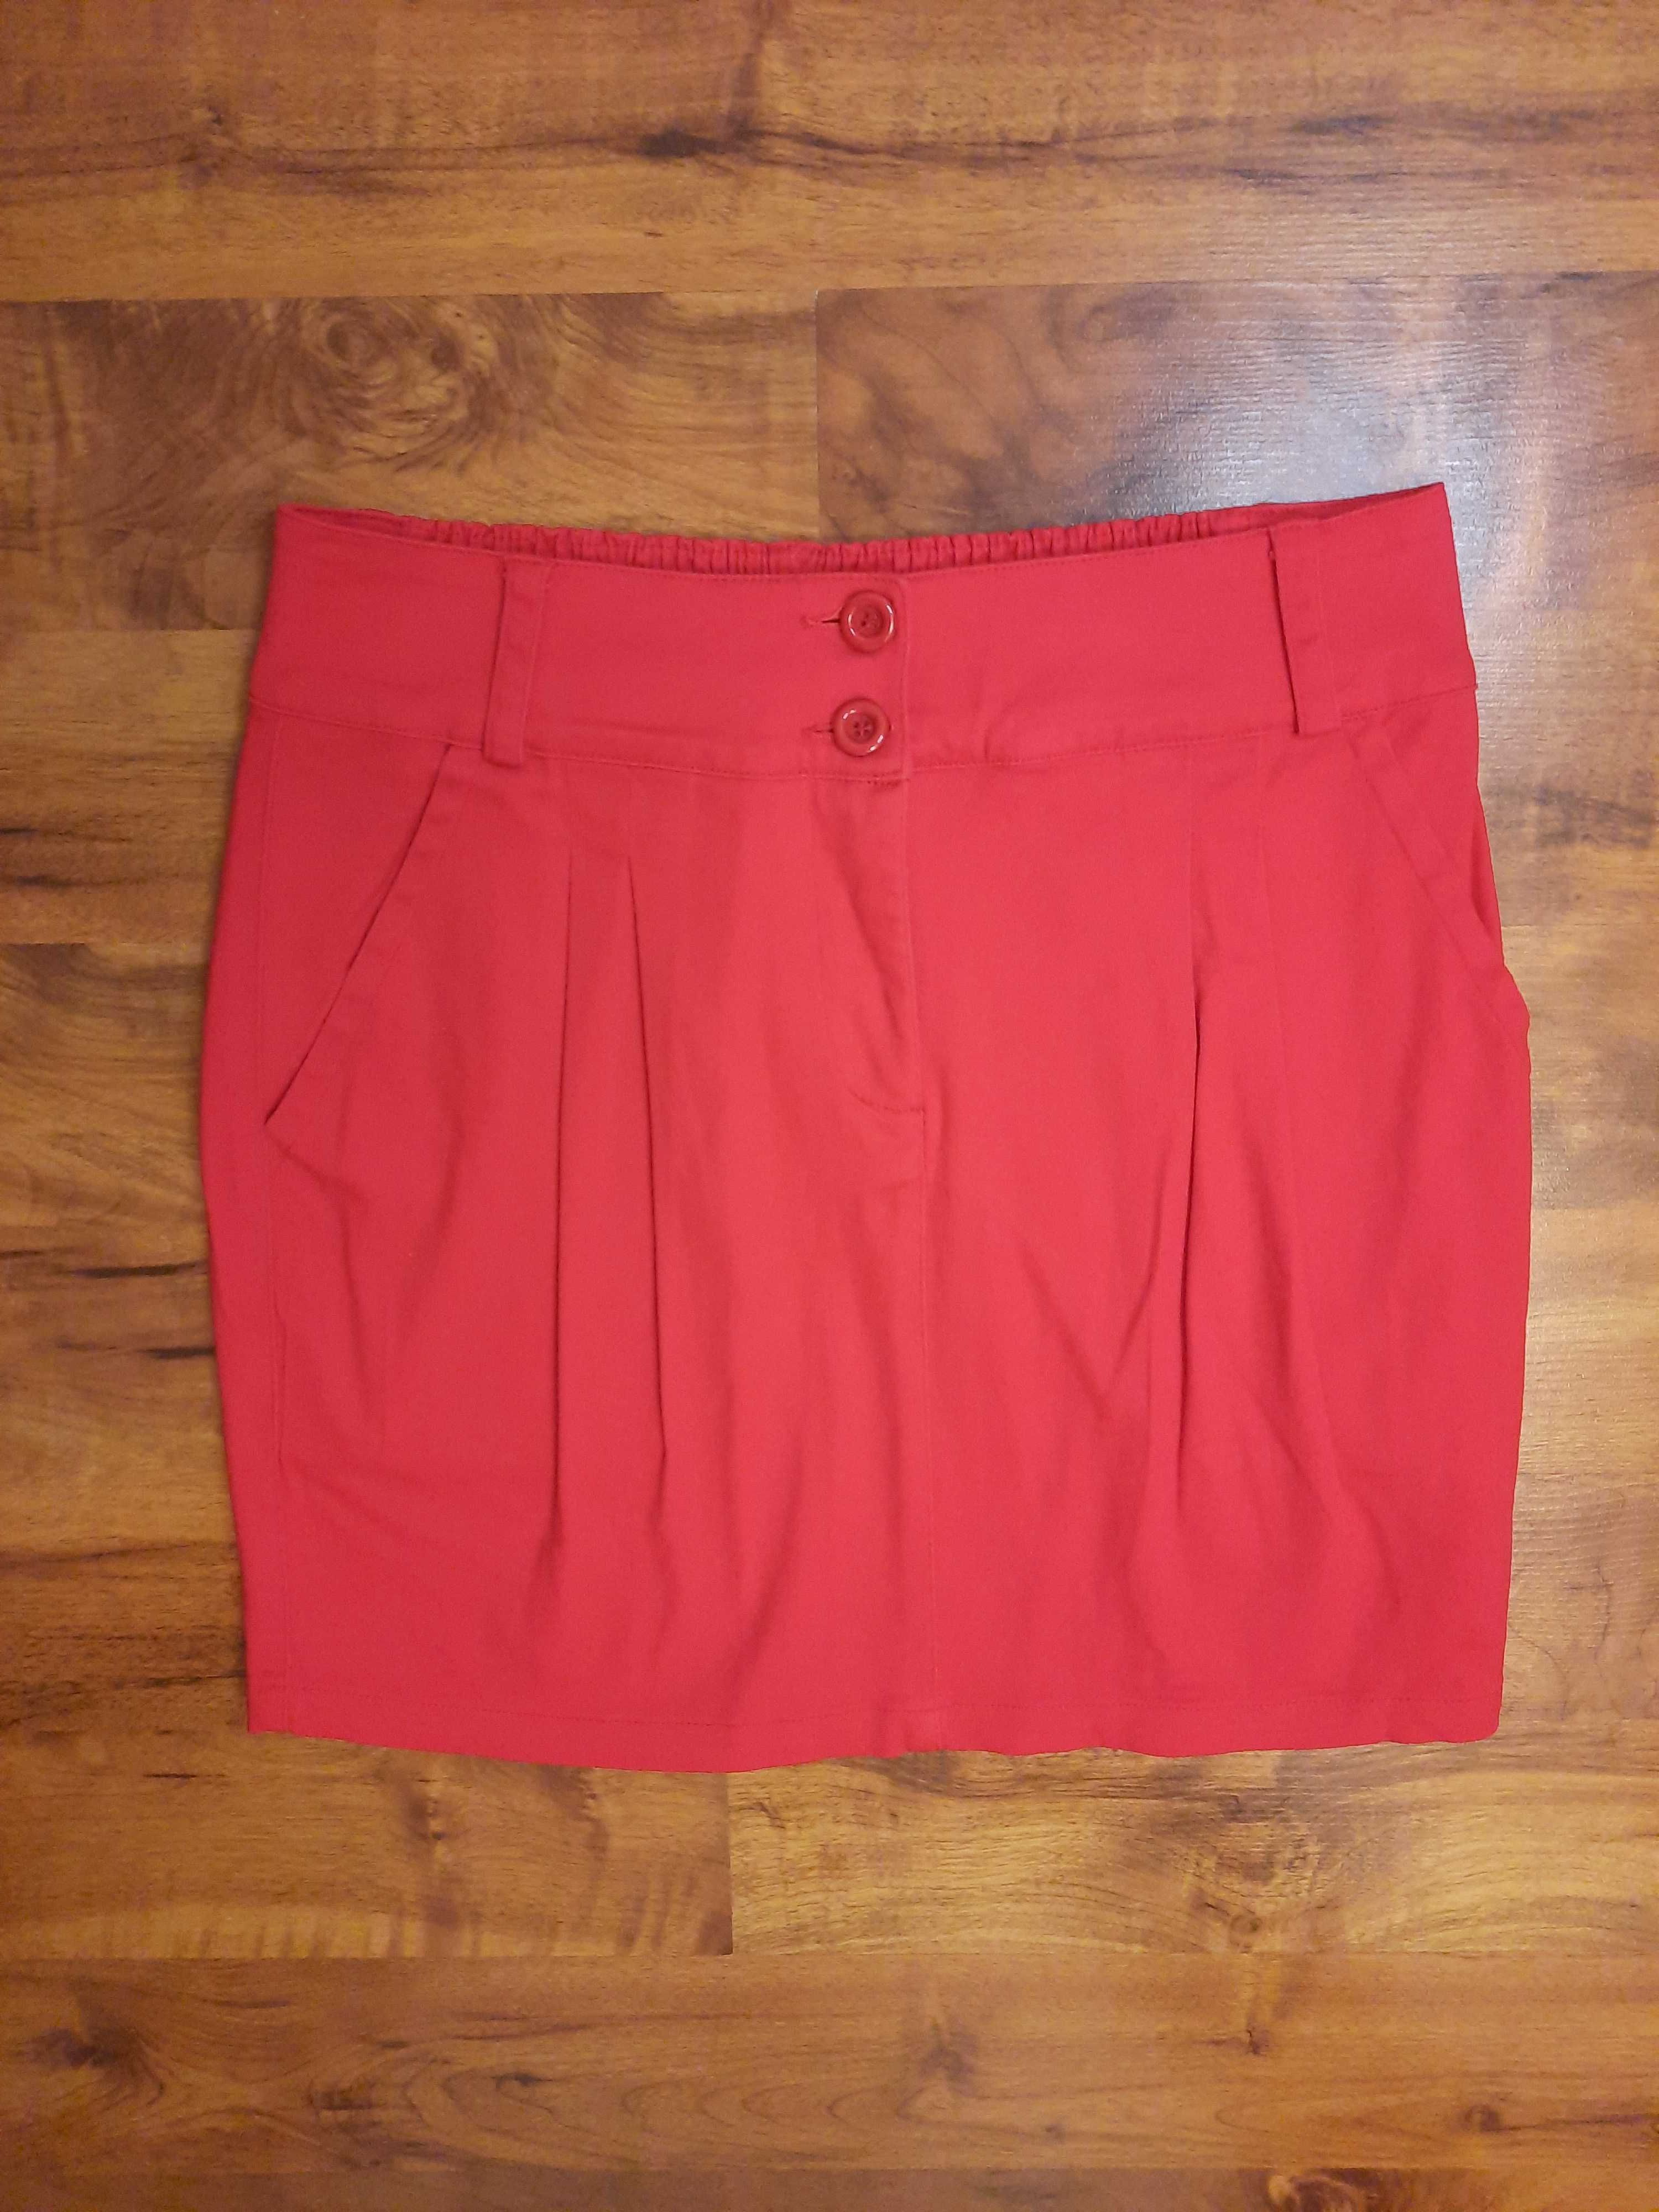 Spódnica czerwona bawełniana spódniczka Even And Odd rozmiar S 36